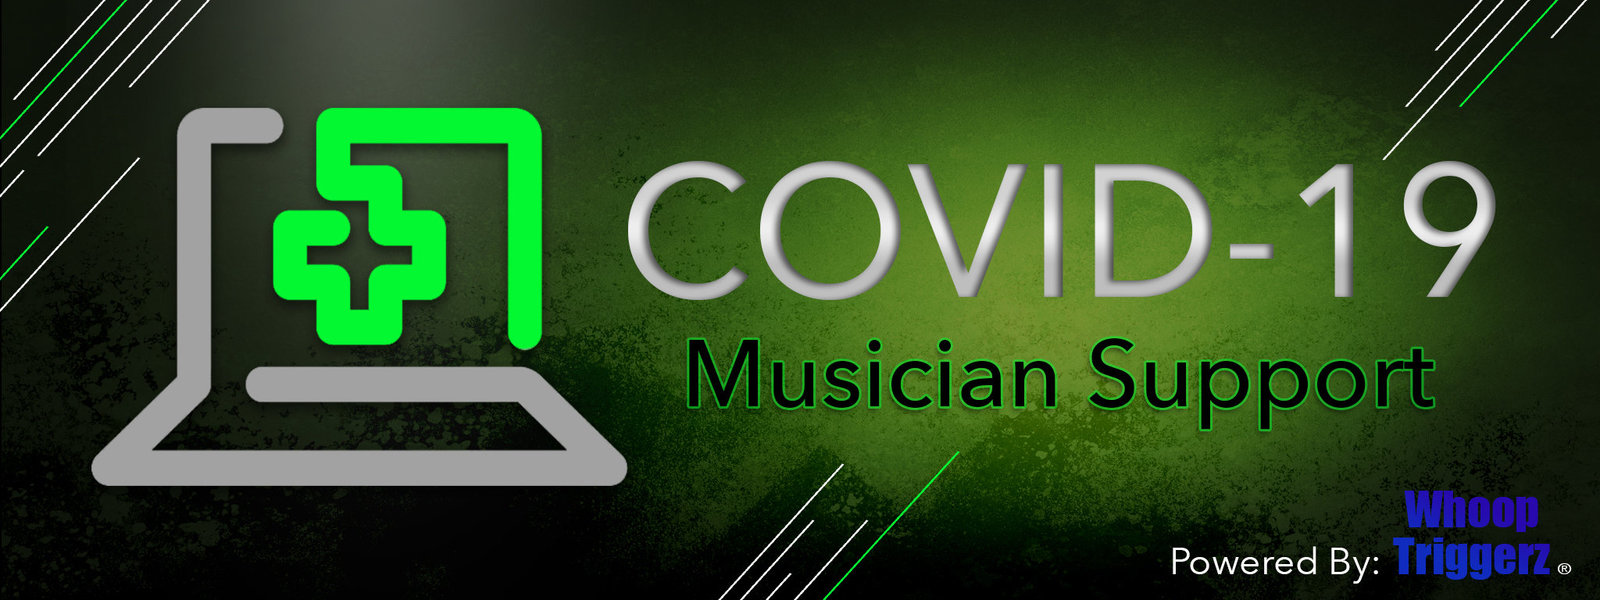 Covid19 Musician Support